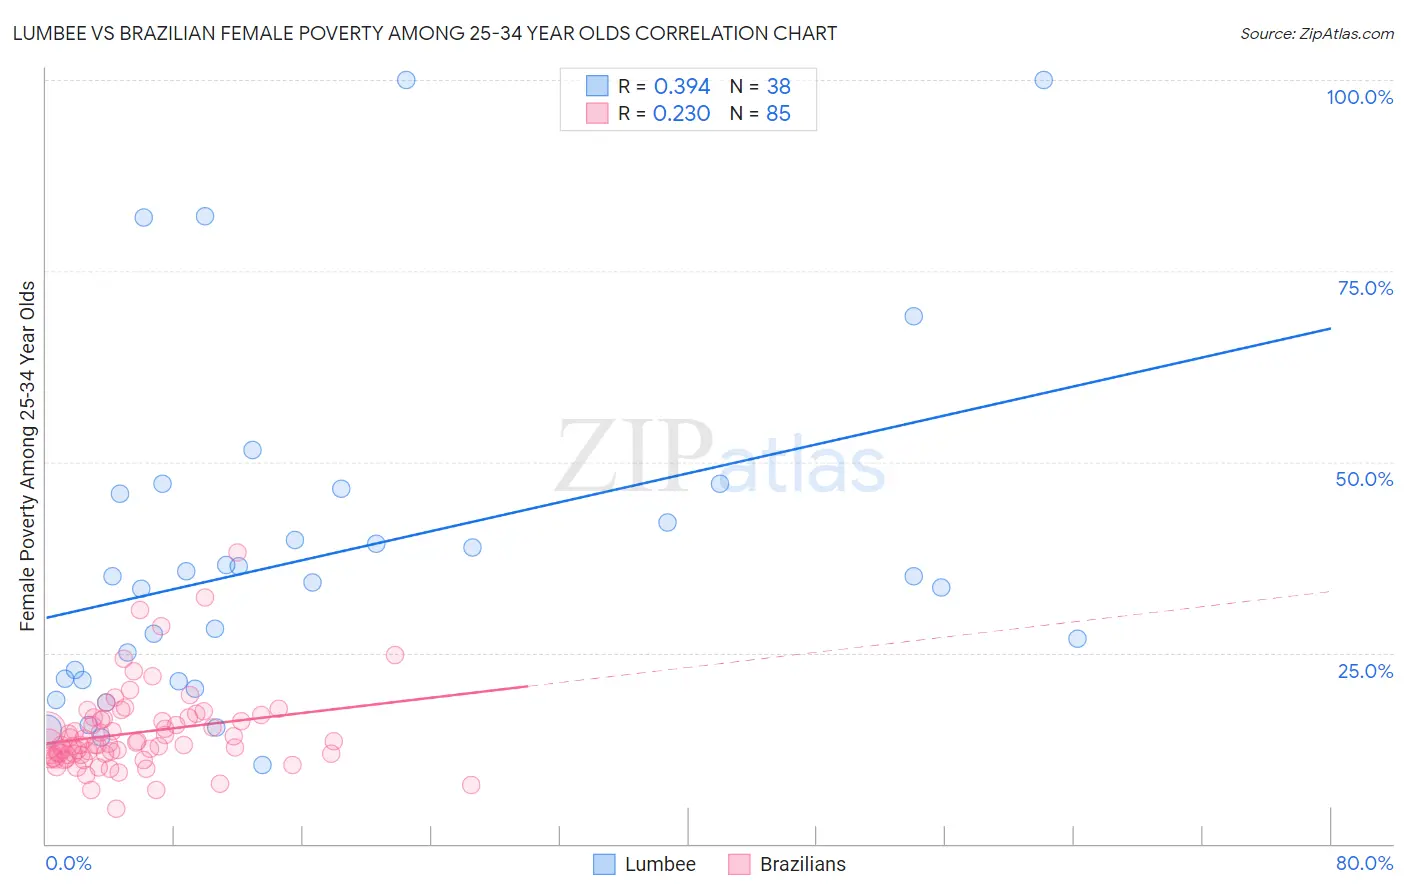 Lumbee vs Brazilian Female Poverty Among 25-34 Year Olds